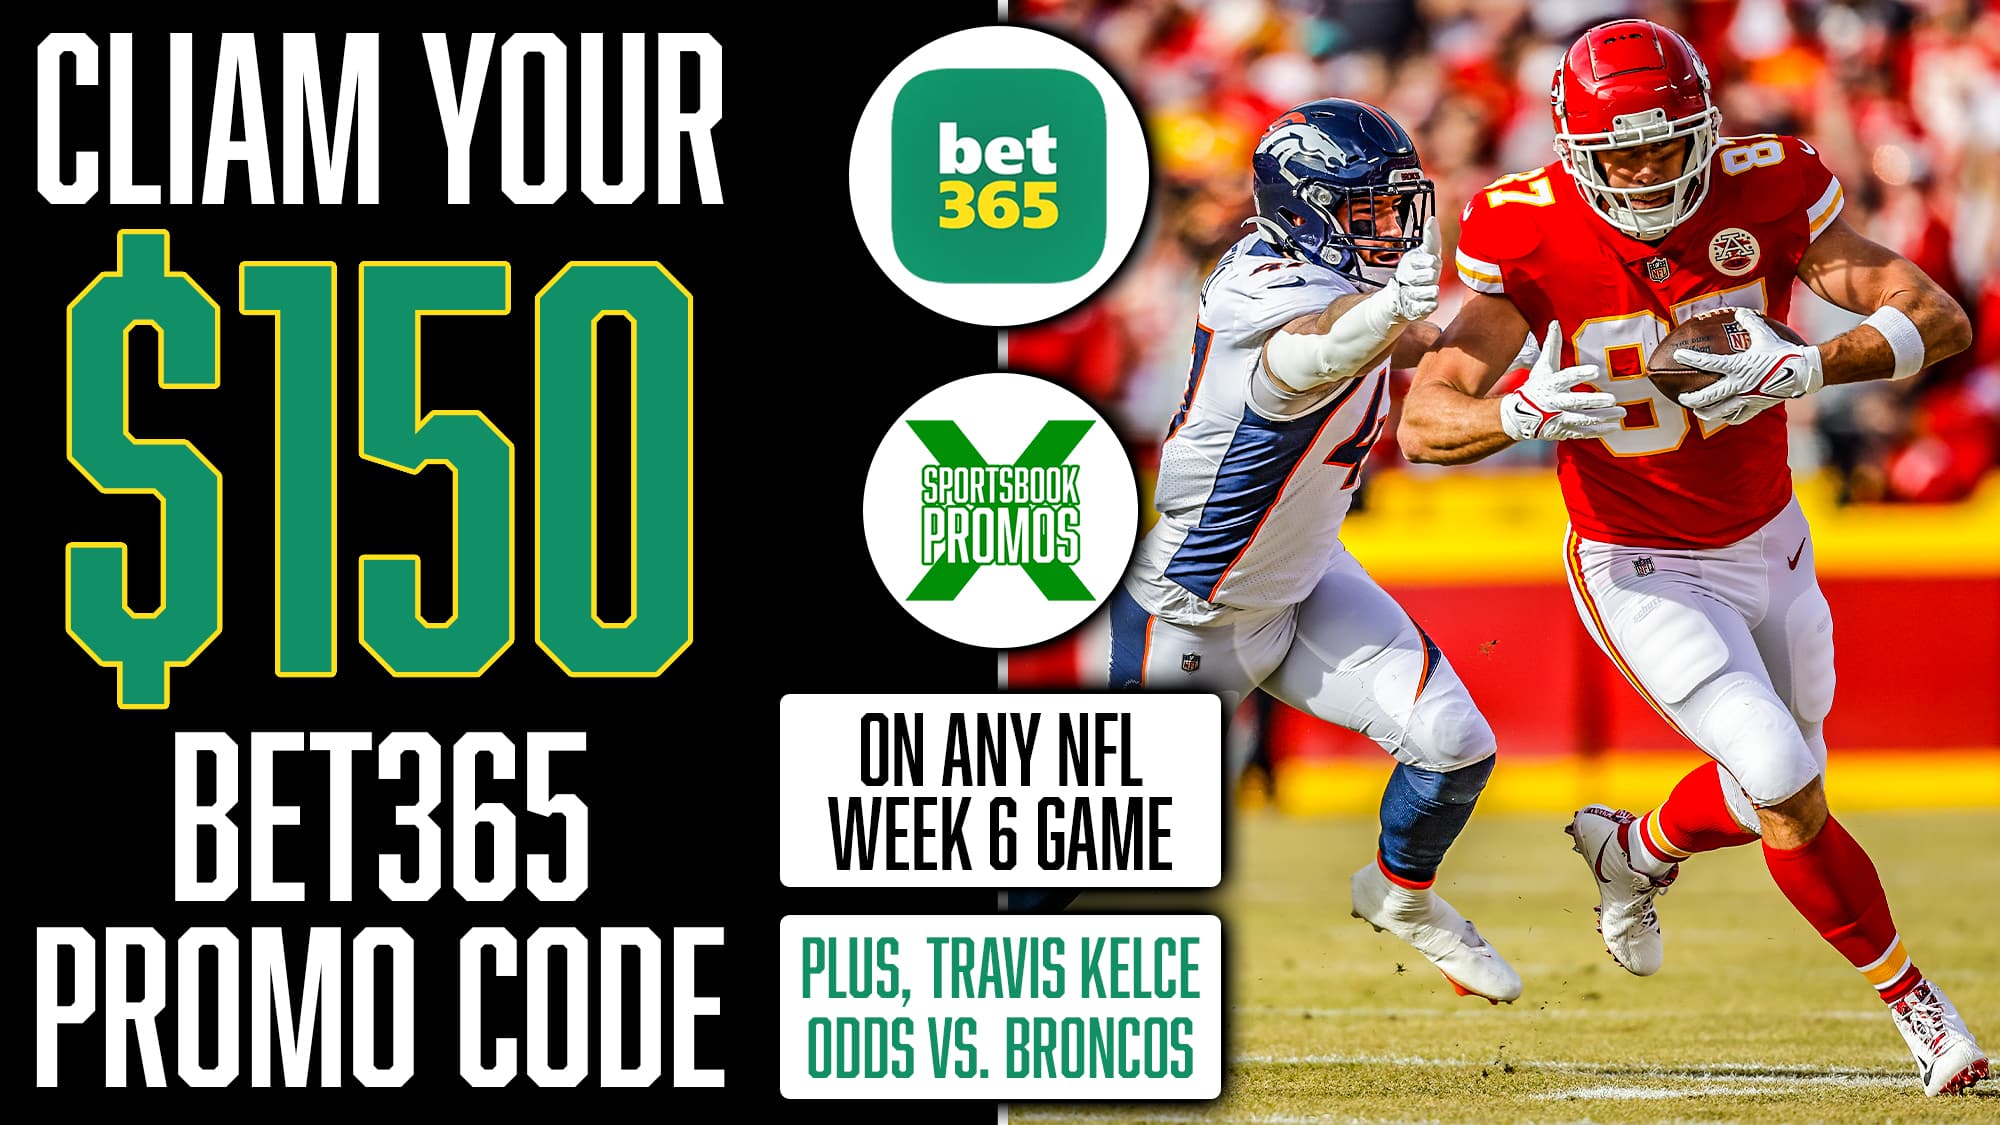 bet365 Promo Code, $150 Instant Bonus, Travis Kelce, NFL Week 6